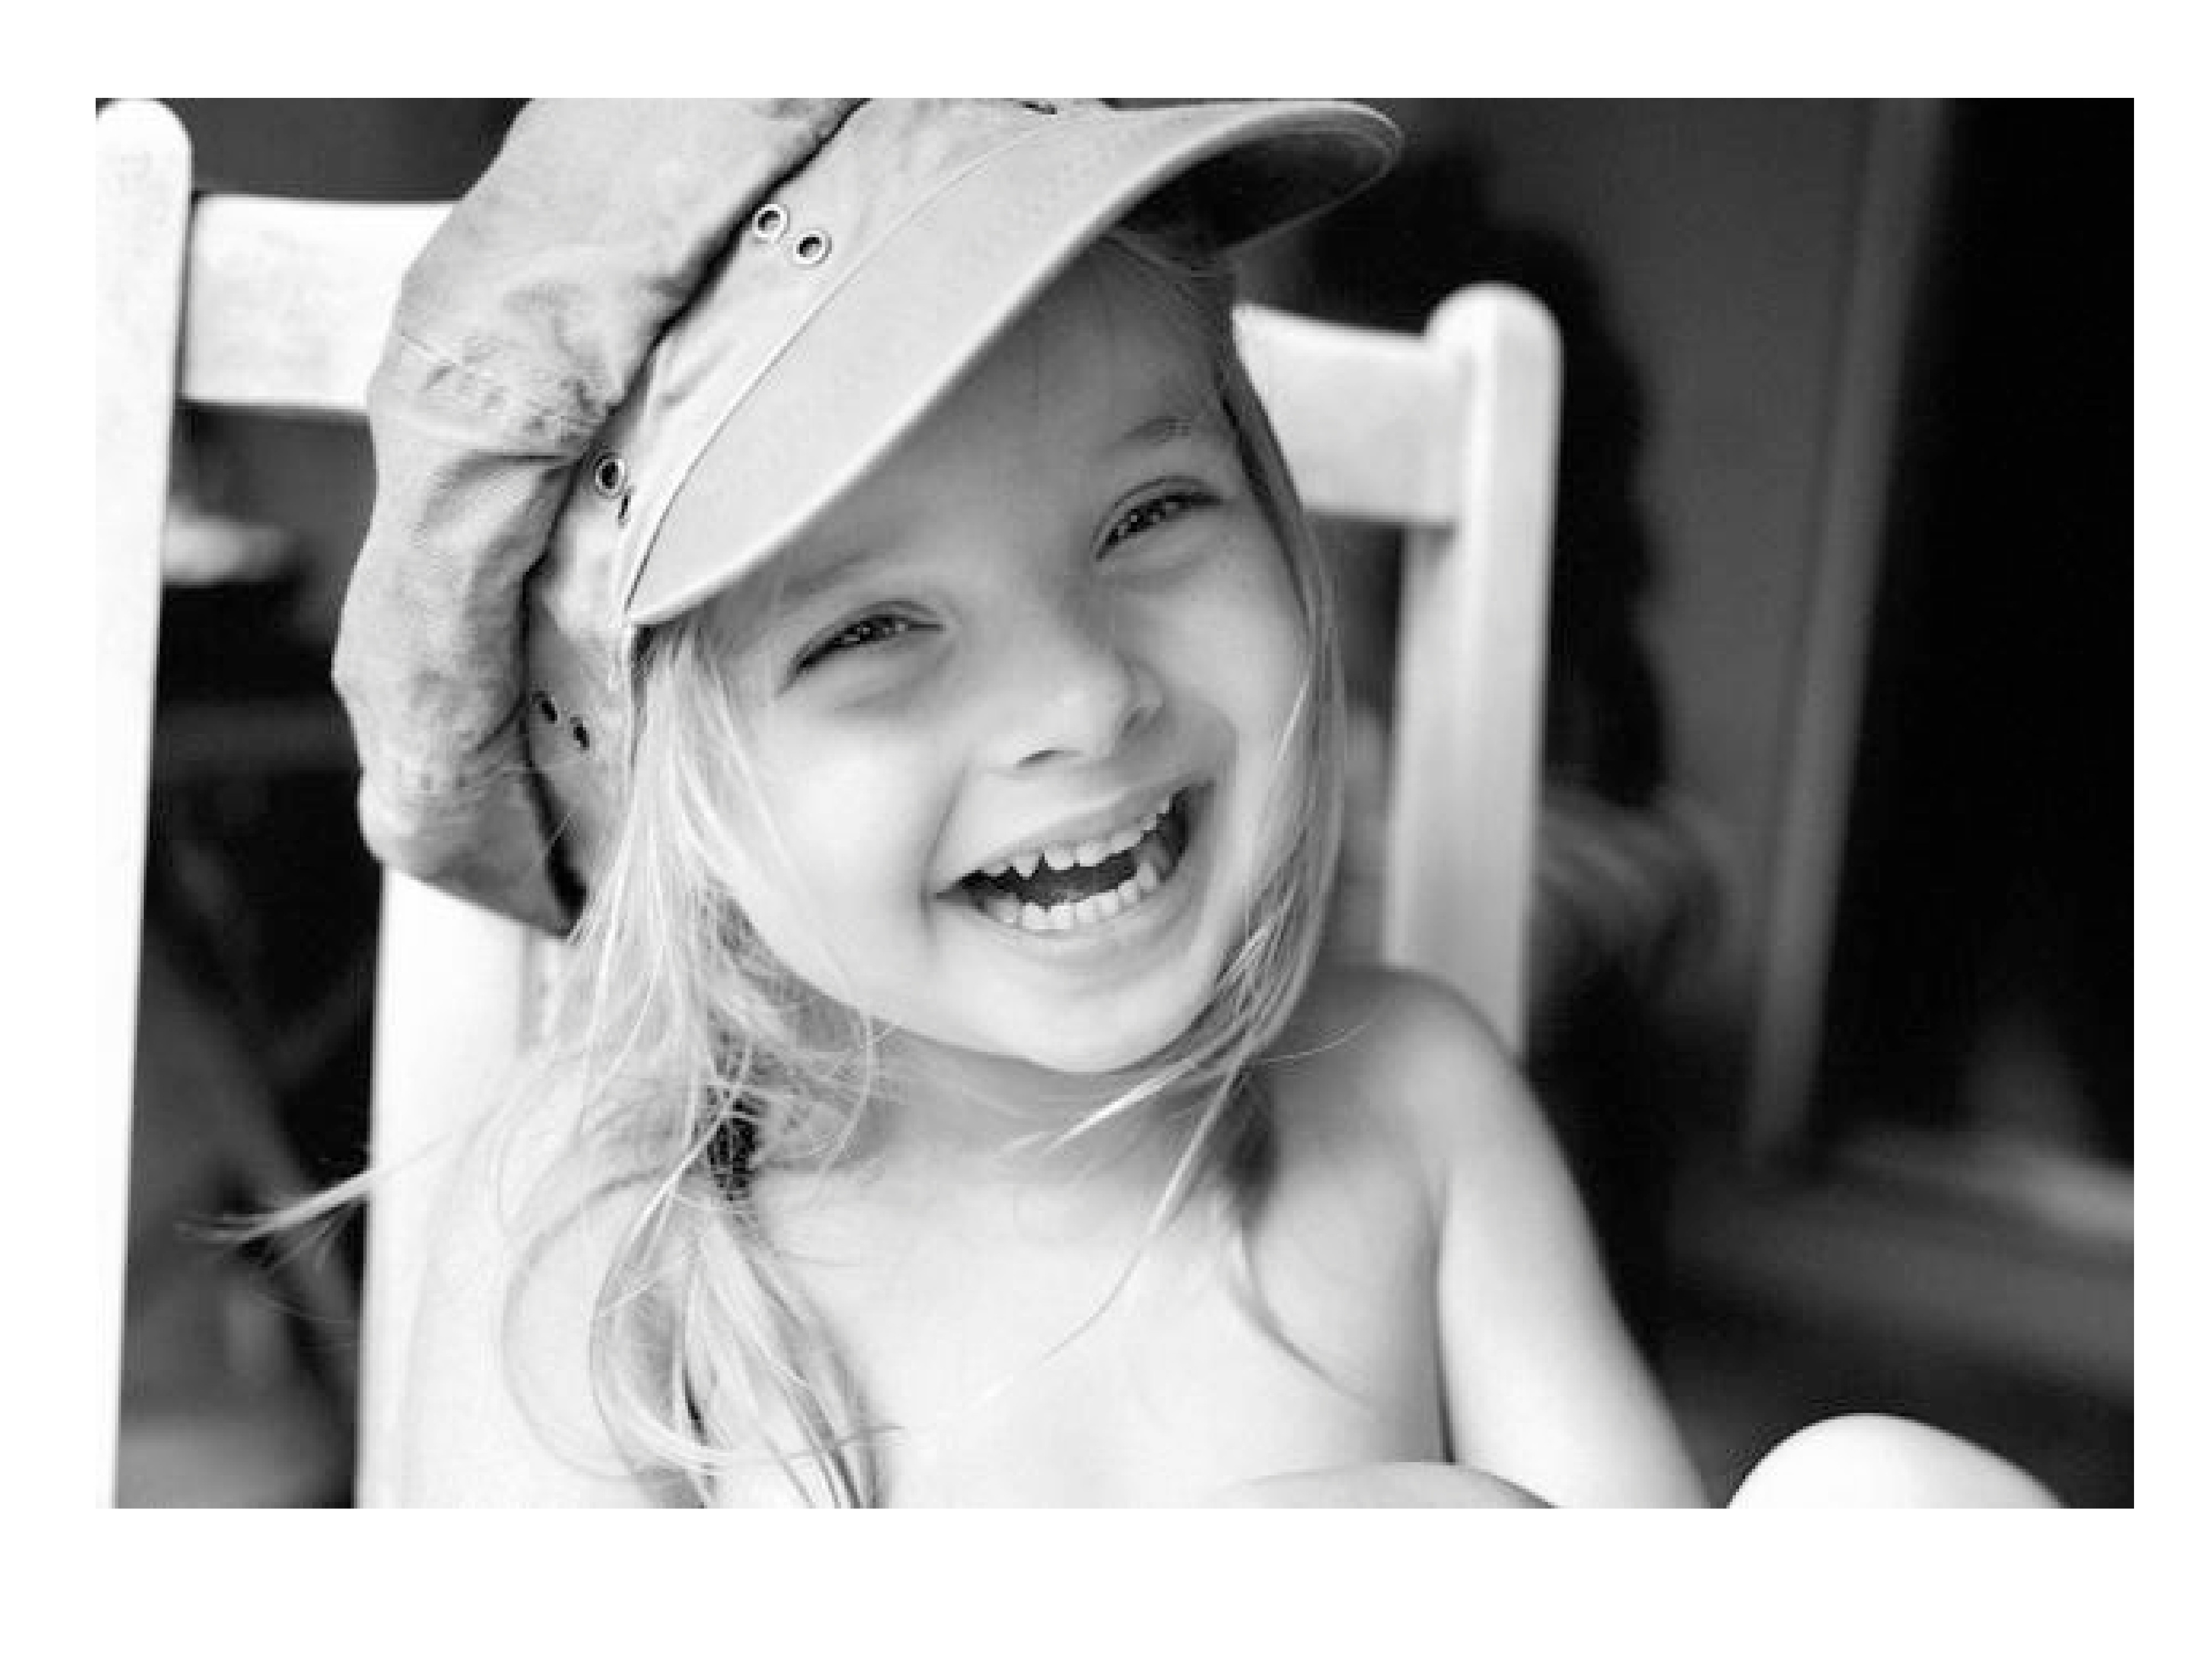 Детский смех стих. Улыбка ребенка. Маленькая девочка смеется. Улыбка девочки. Красивая улыбка ребенка.